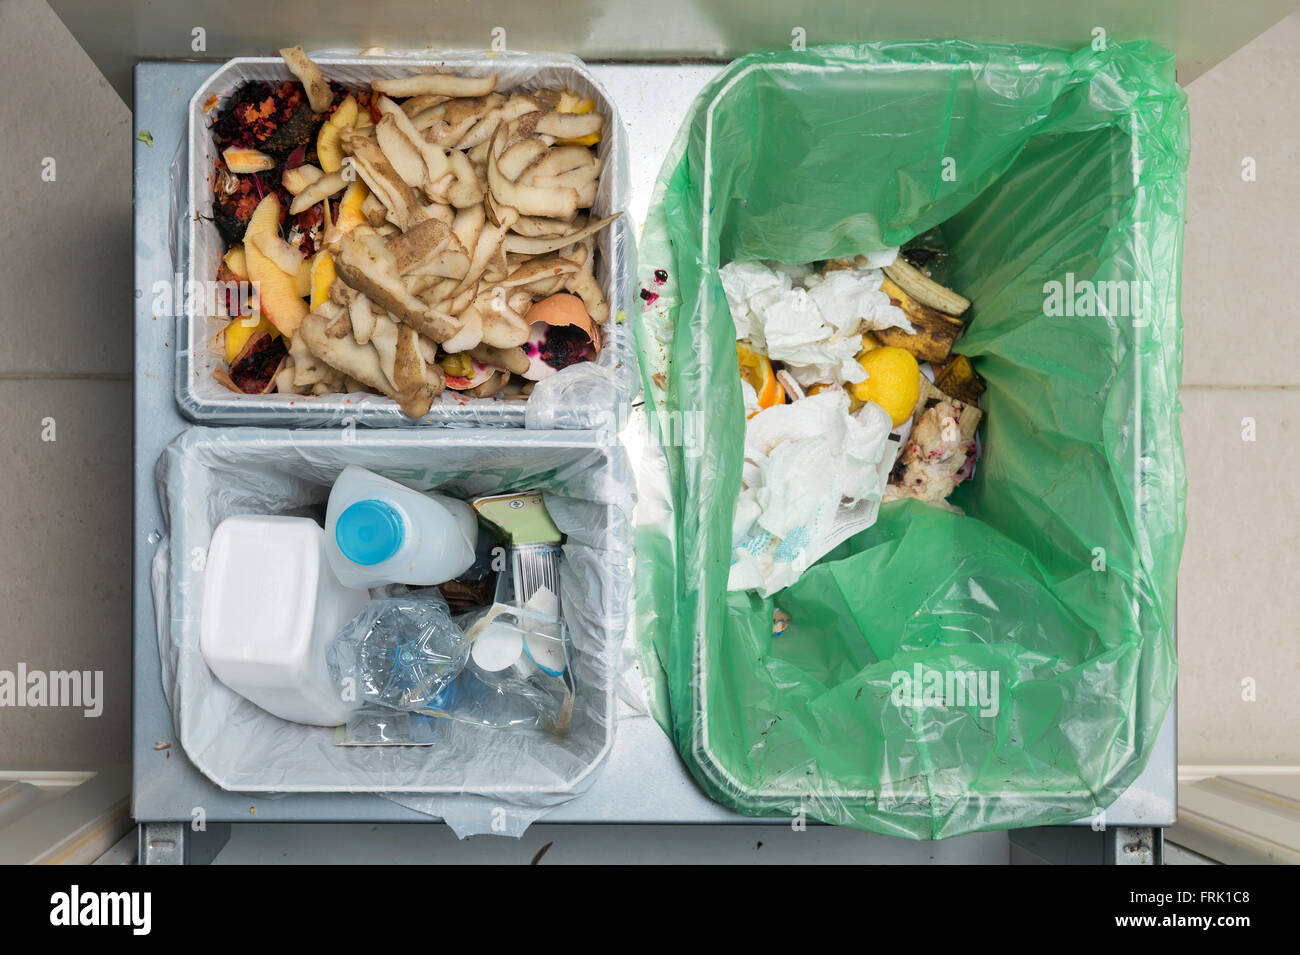 Haushalt verschwenden Sortier- und recycling-Küche-Behälter in der Schublade. Ökologisch verantwortliches Handeln Konzept, Ansicht von oben Stockfoto